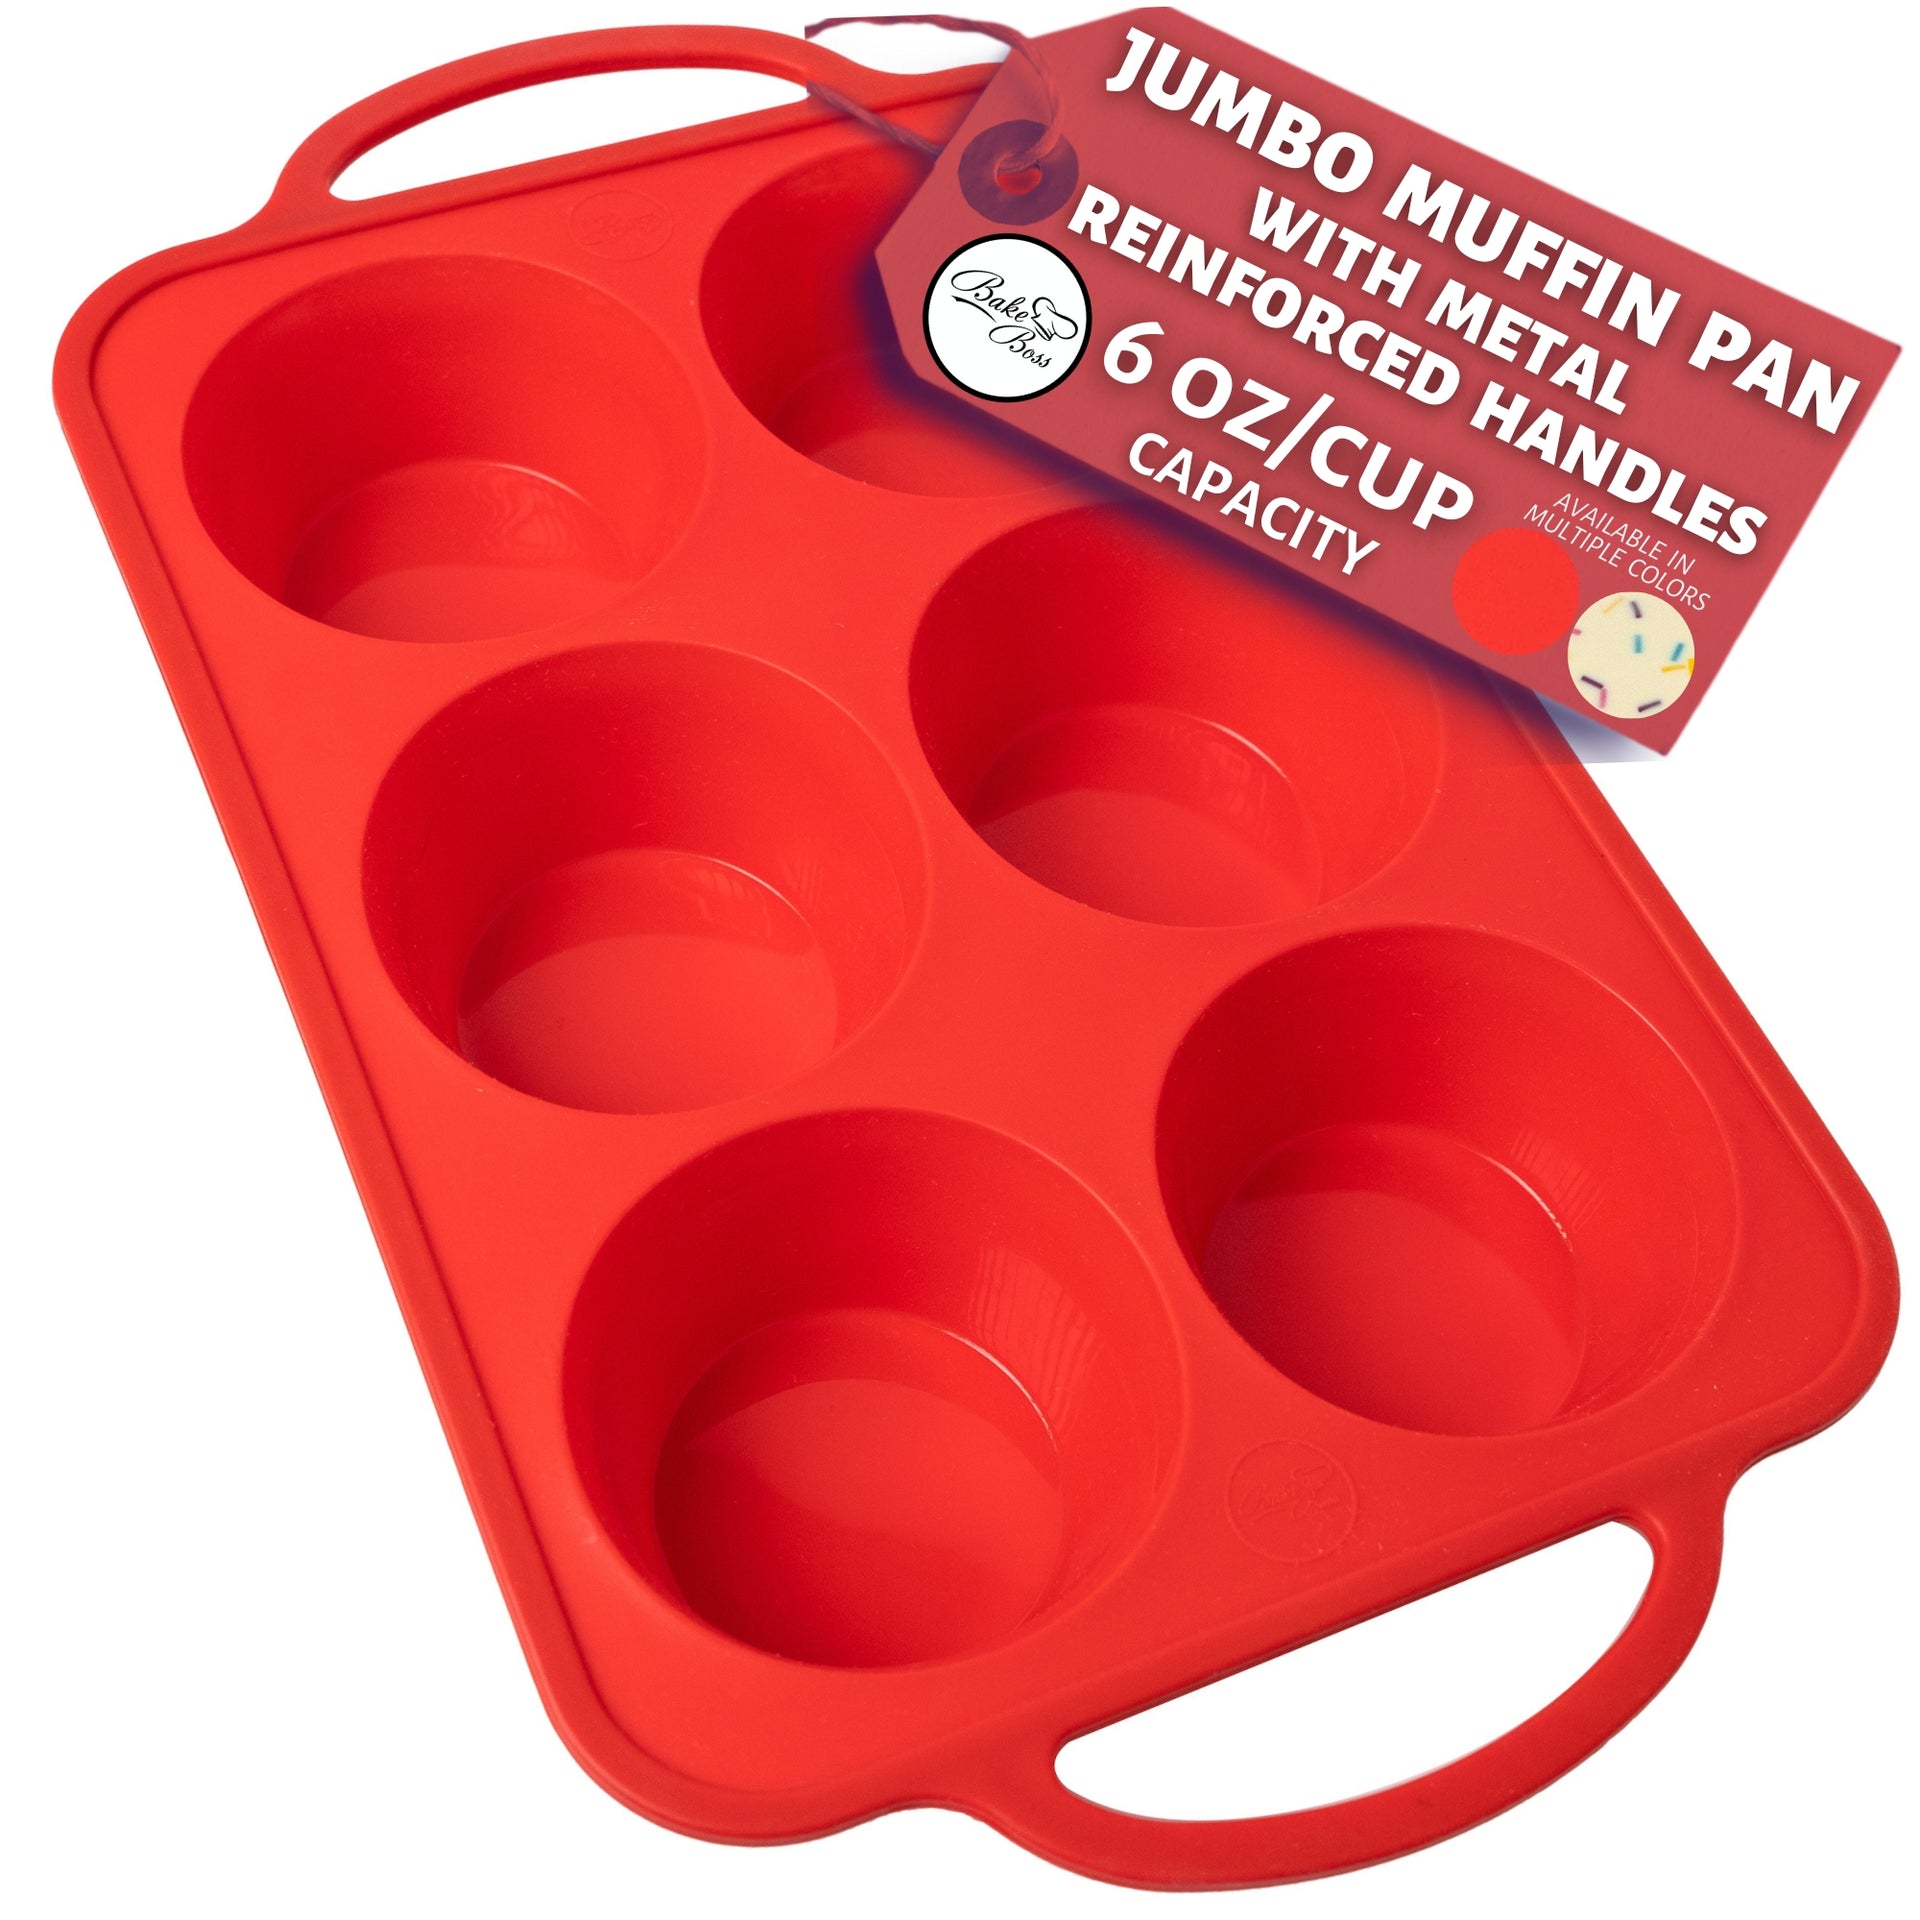 Jumbo Muffin Pan 6 Cup Silicone Texas Muffin Pan, 3.5 Large Cupcake T